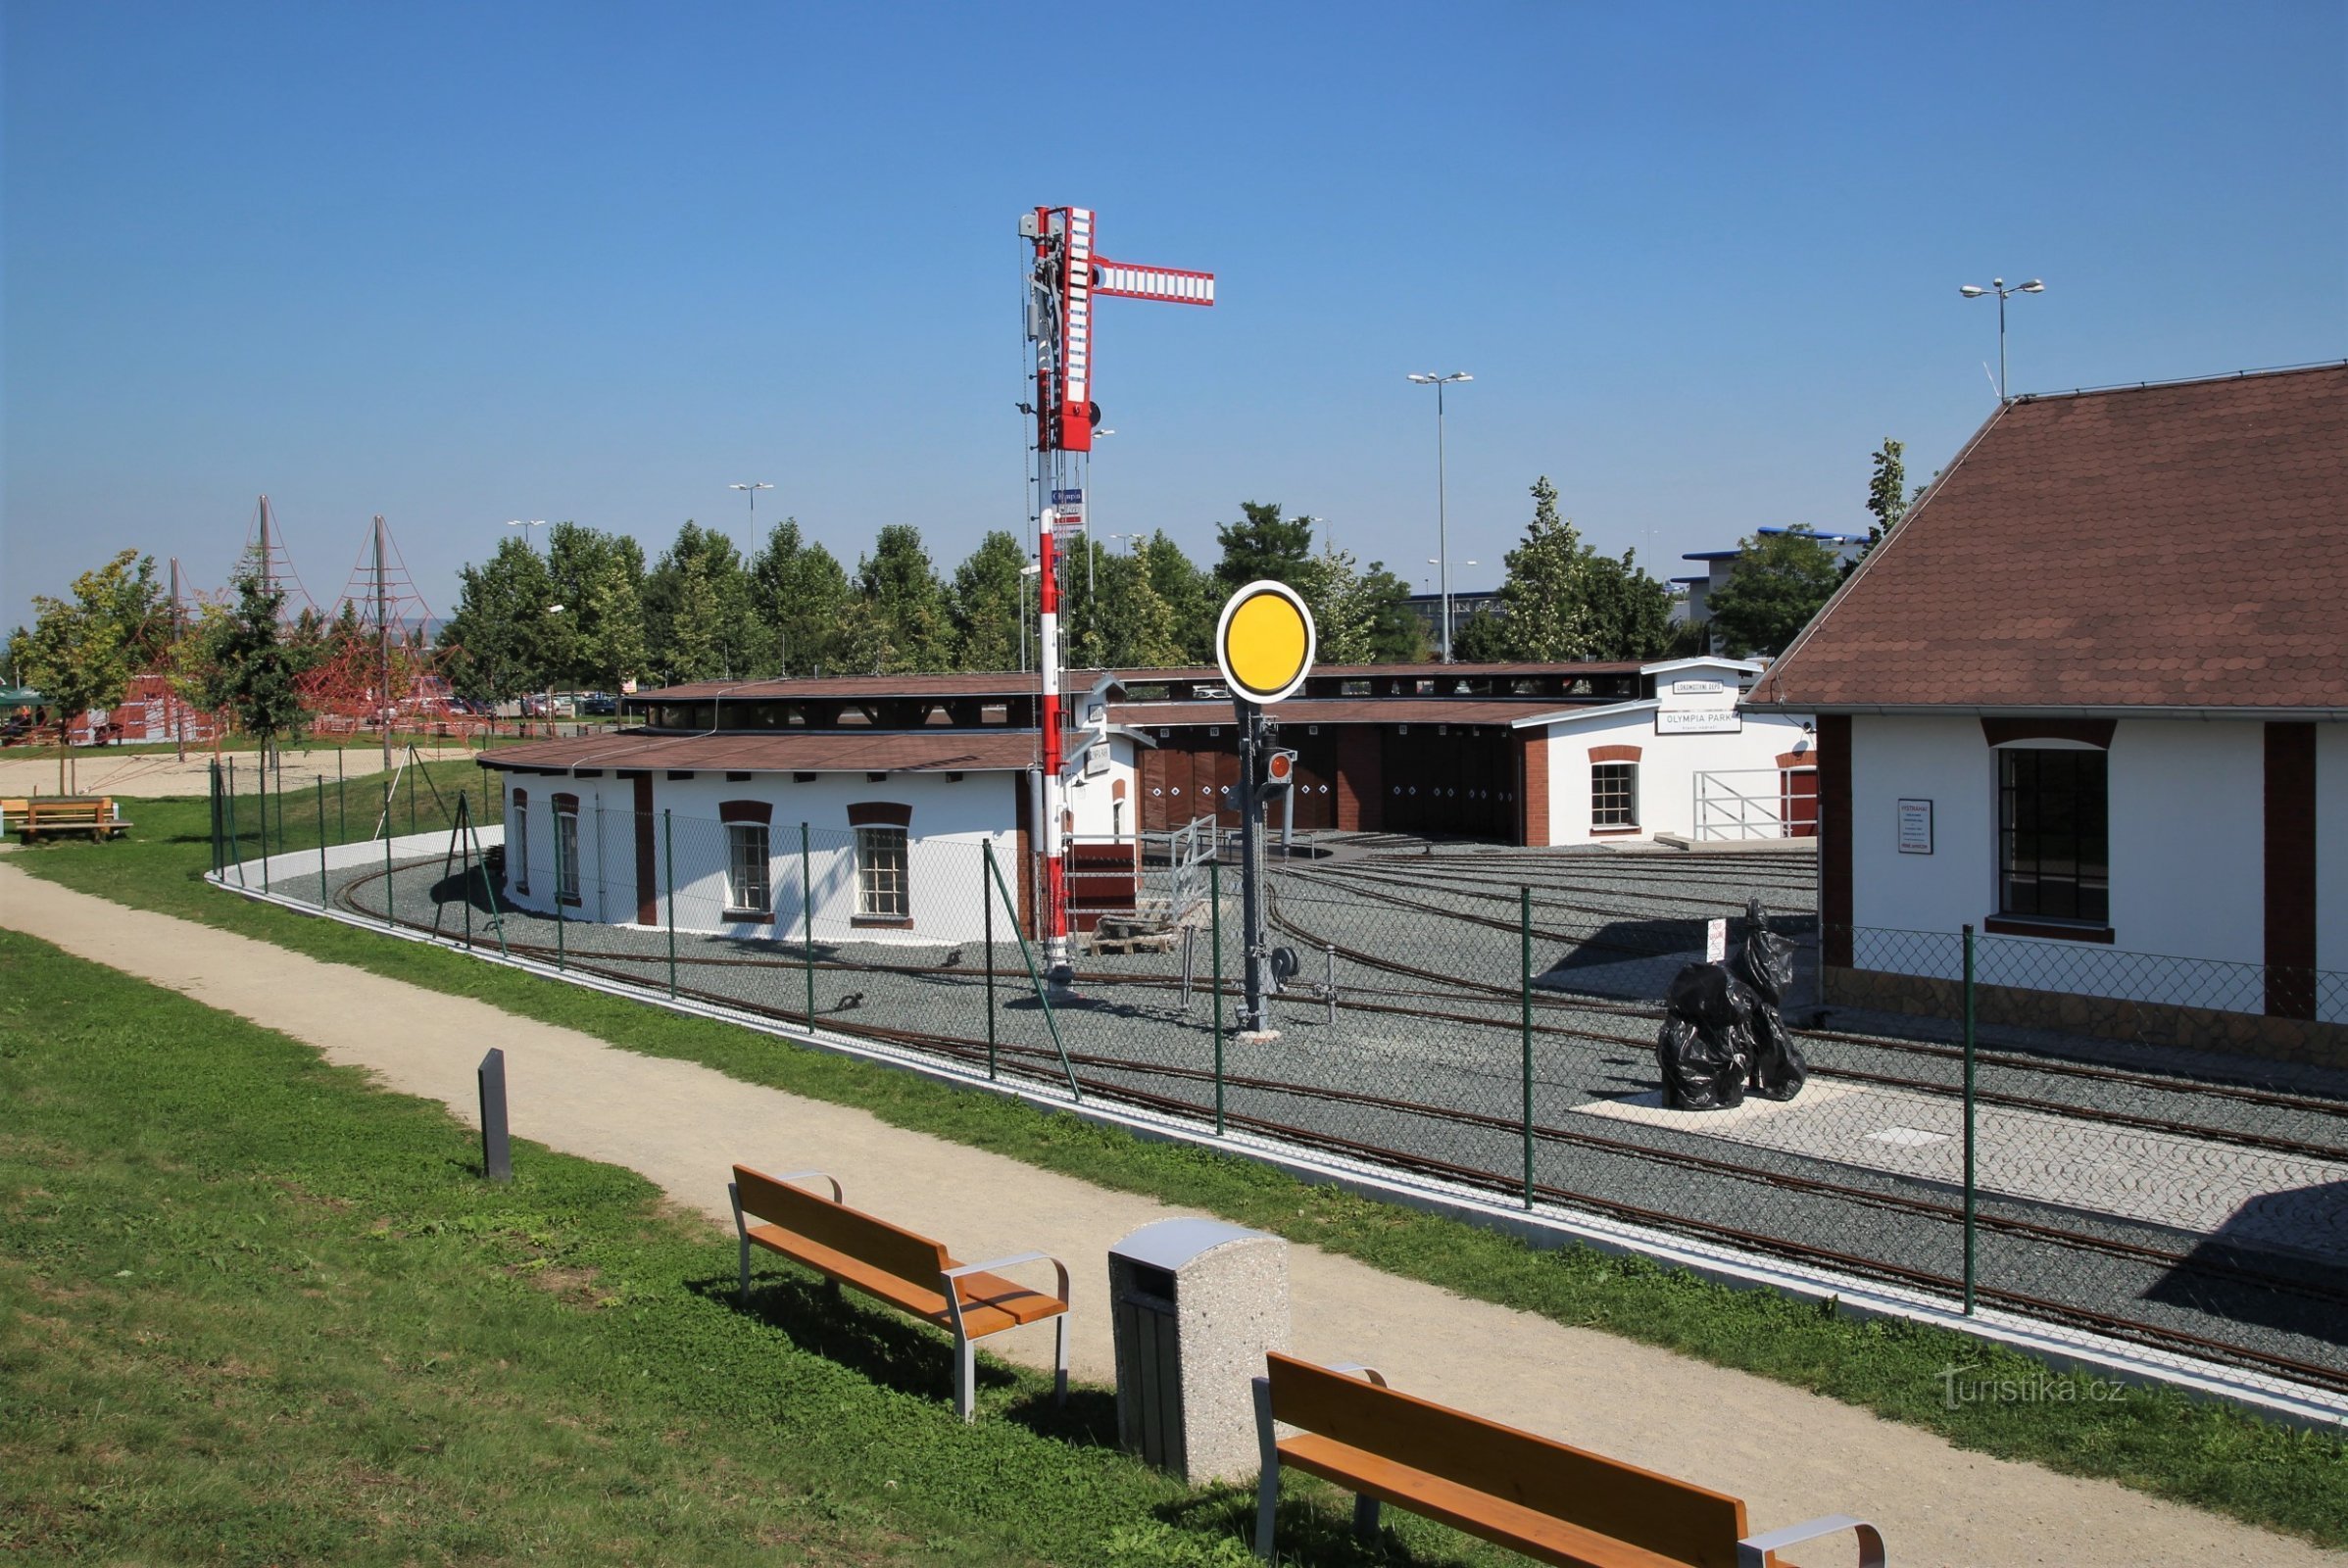 公园铁路-火车站